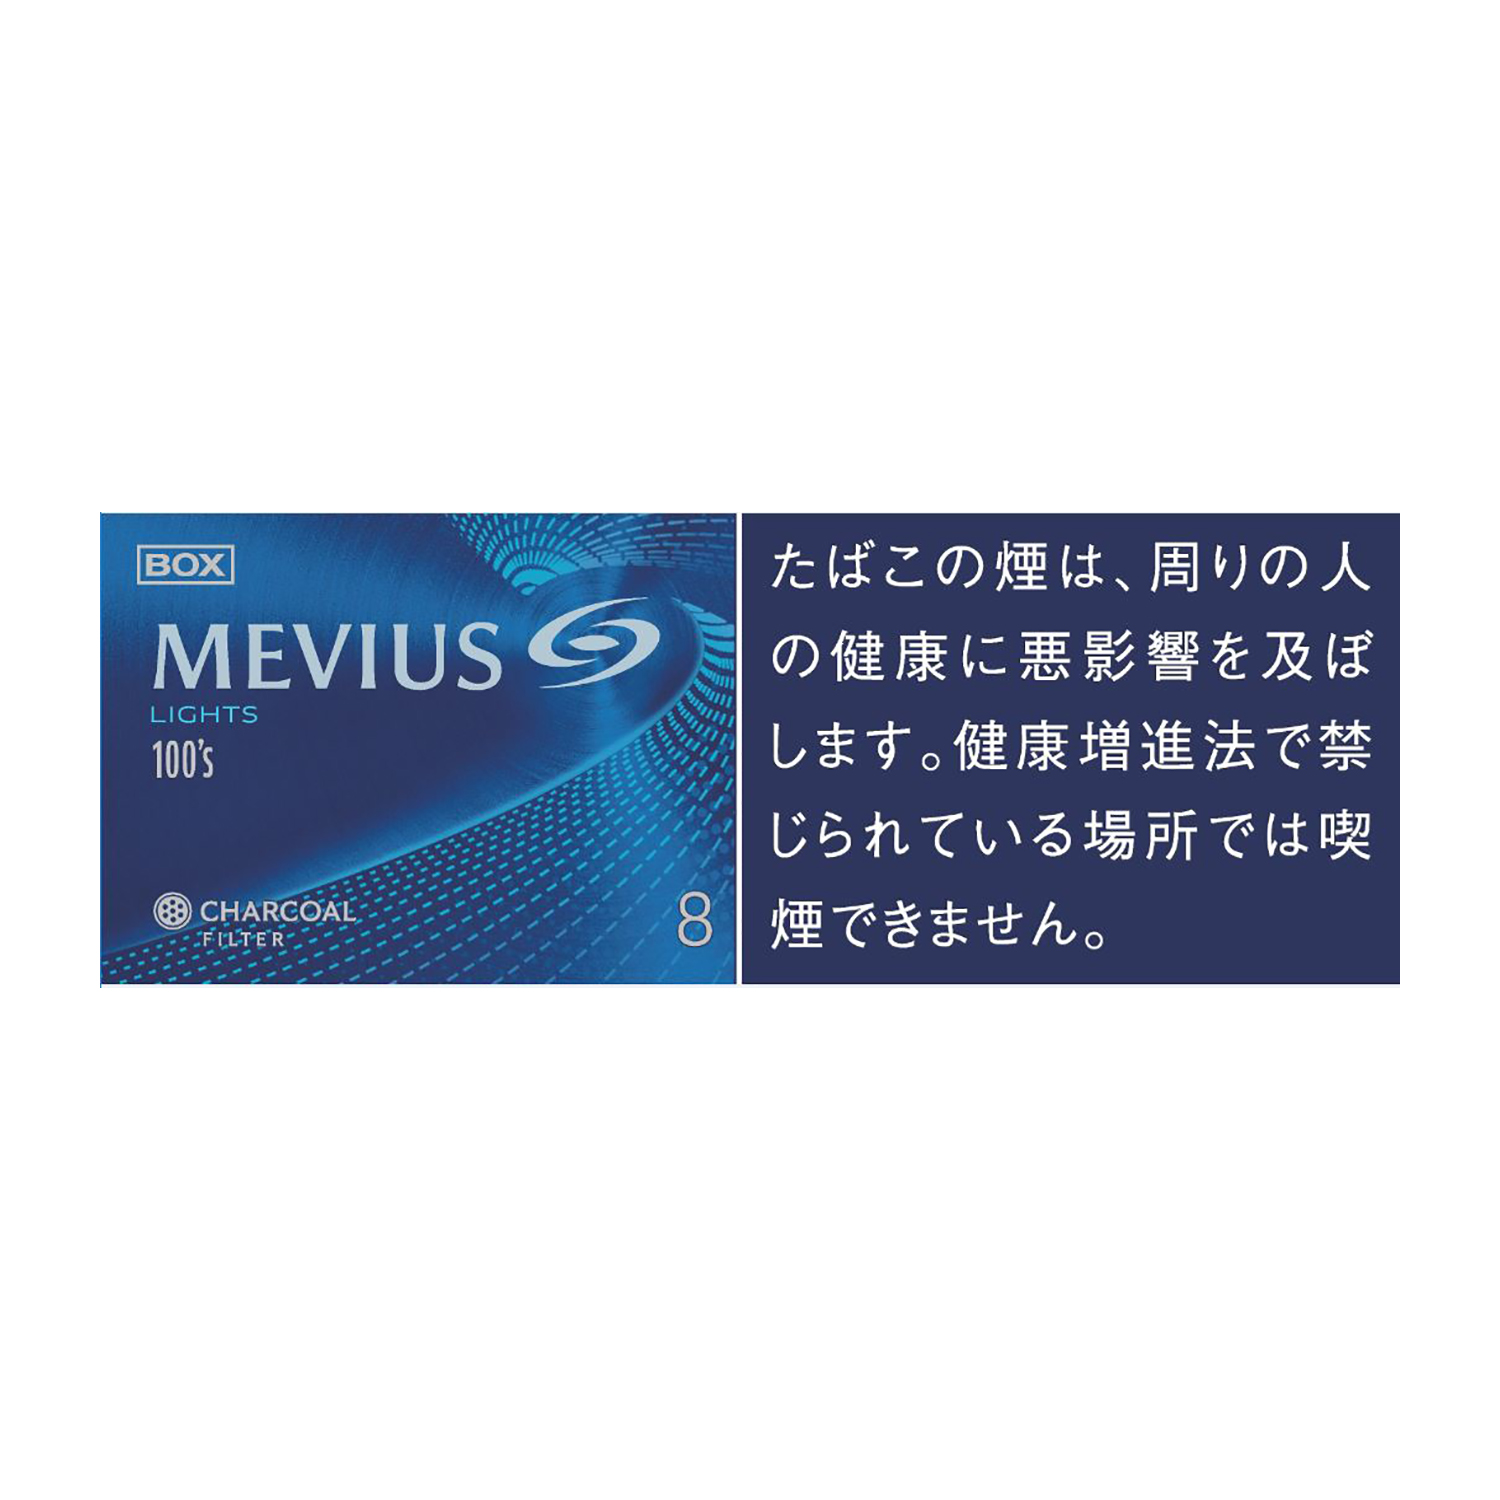 MEVIUS LIGHTS 100's BOX / Tar:8mg Nicotine:0.7mg